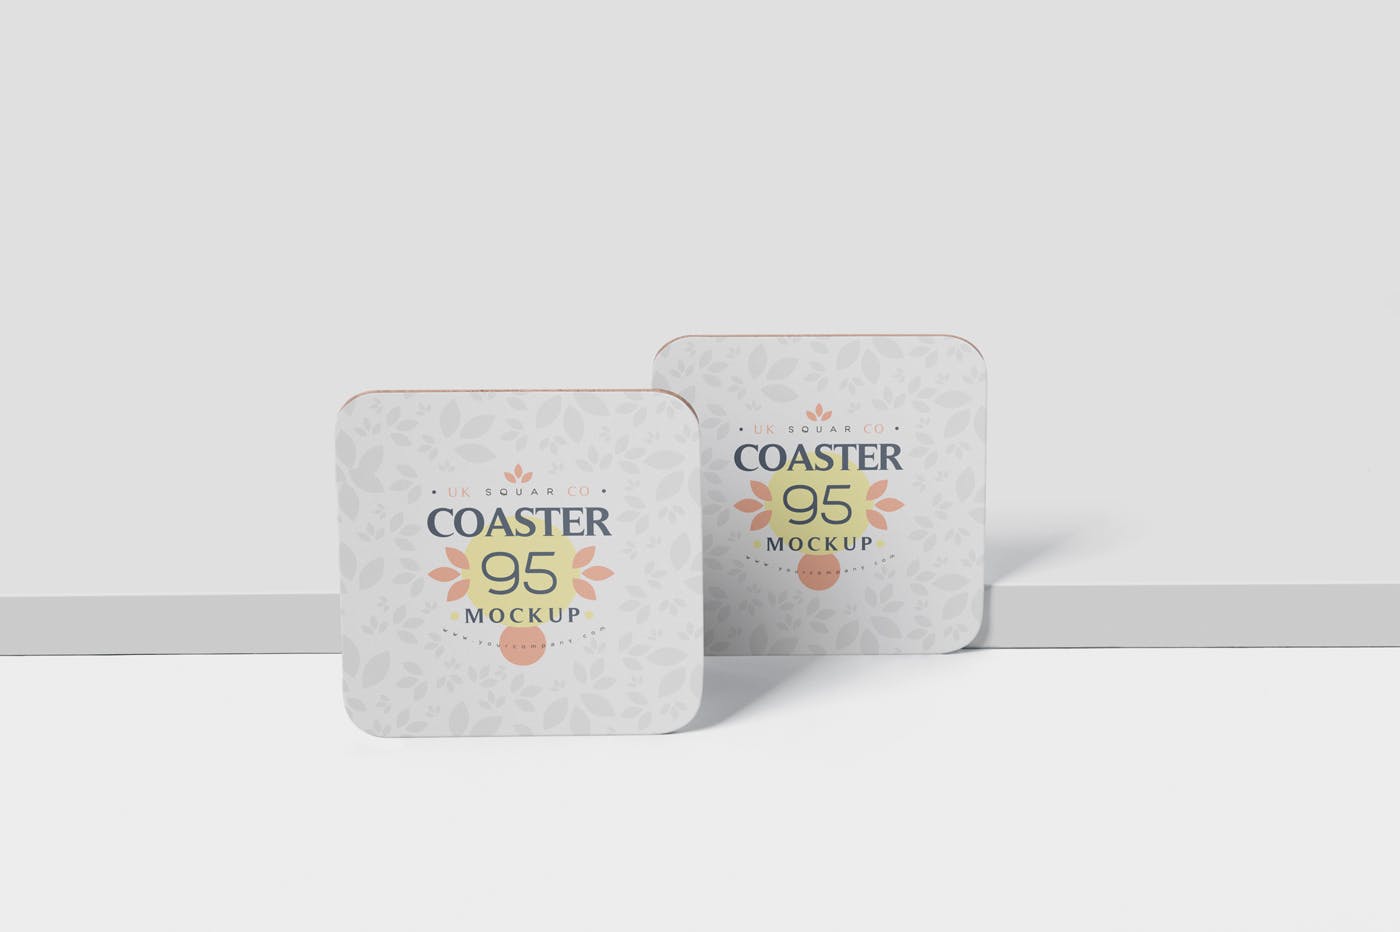 圆角方形杯垫图案设计蚂蚁素材精选模板 Square Coaster Mock-Up with Round Corner插图(3)